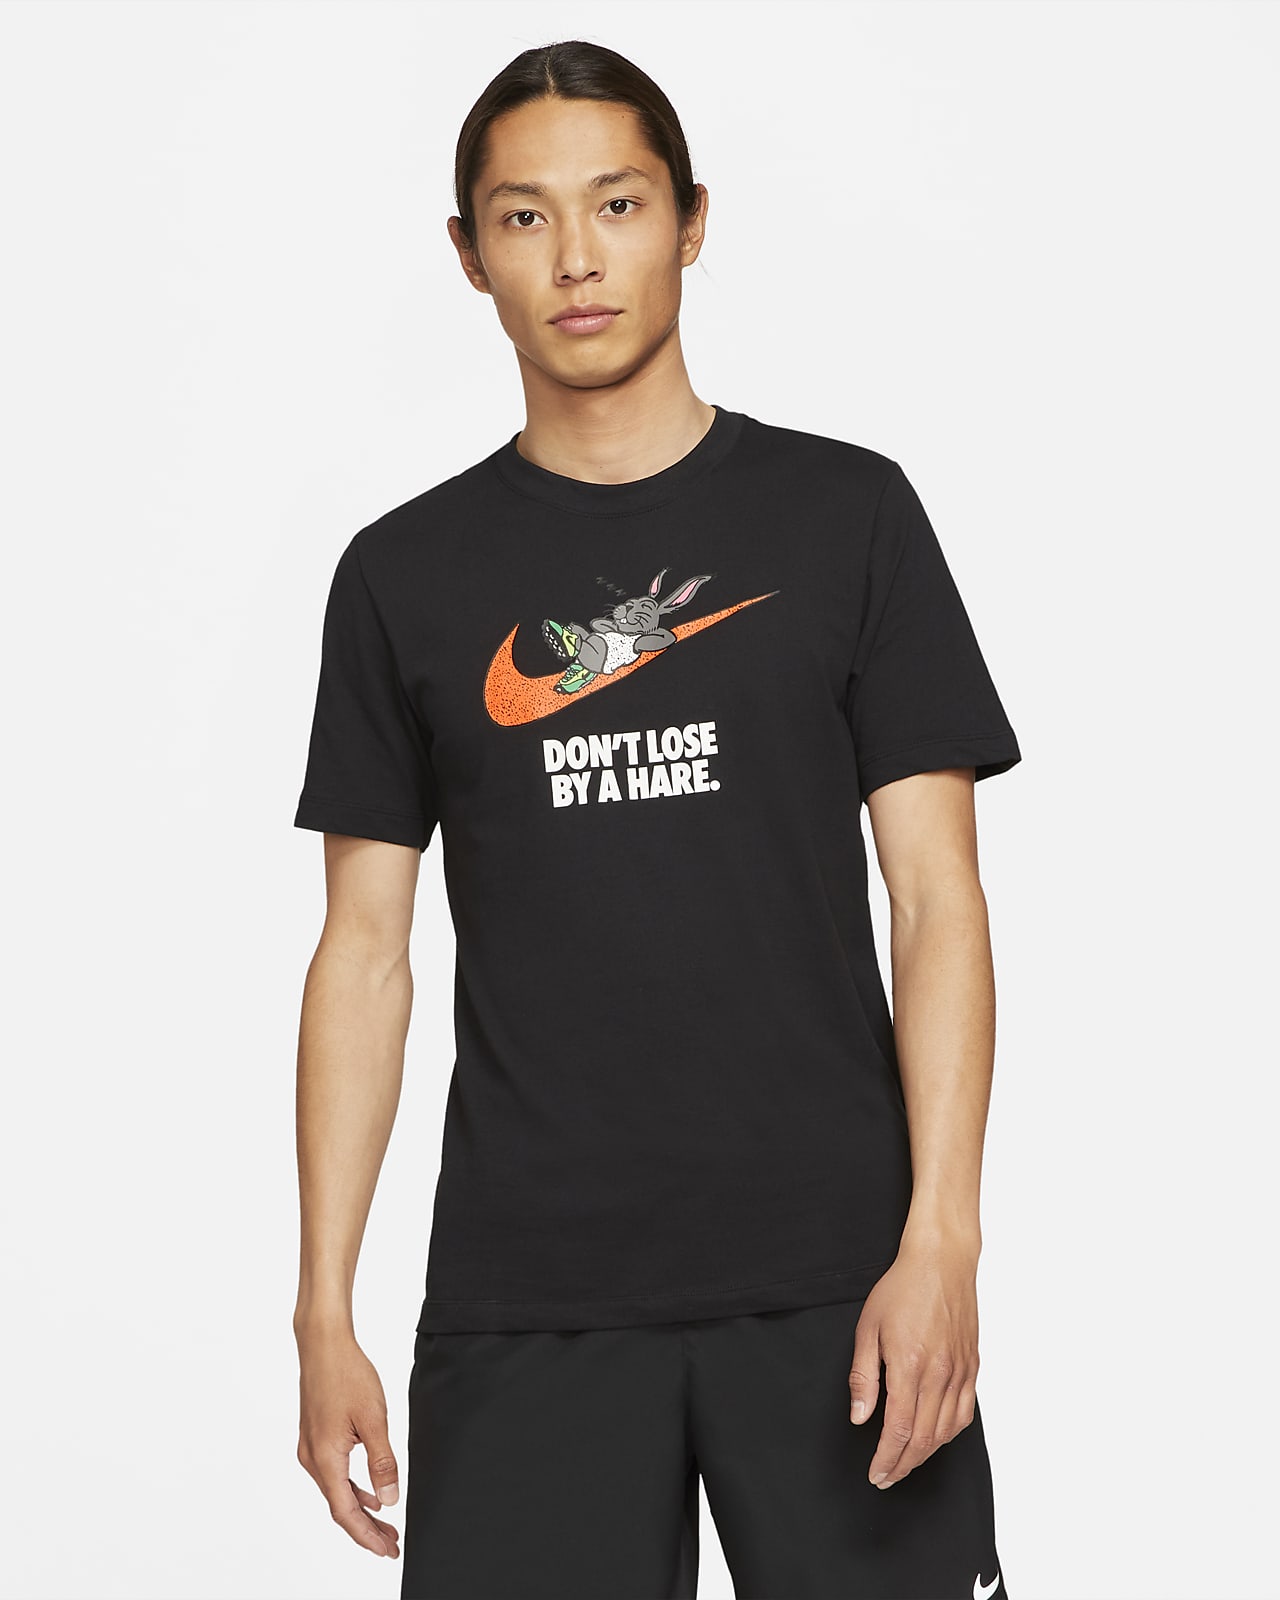 เสื้อยืดวิ่งผู้ชาย Nike Dri-FIT “Hare”